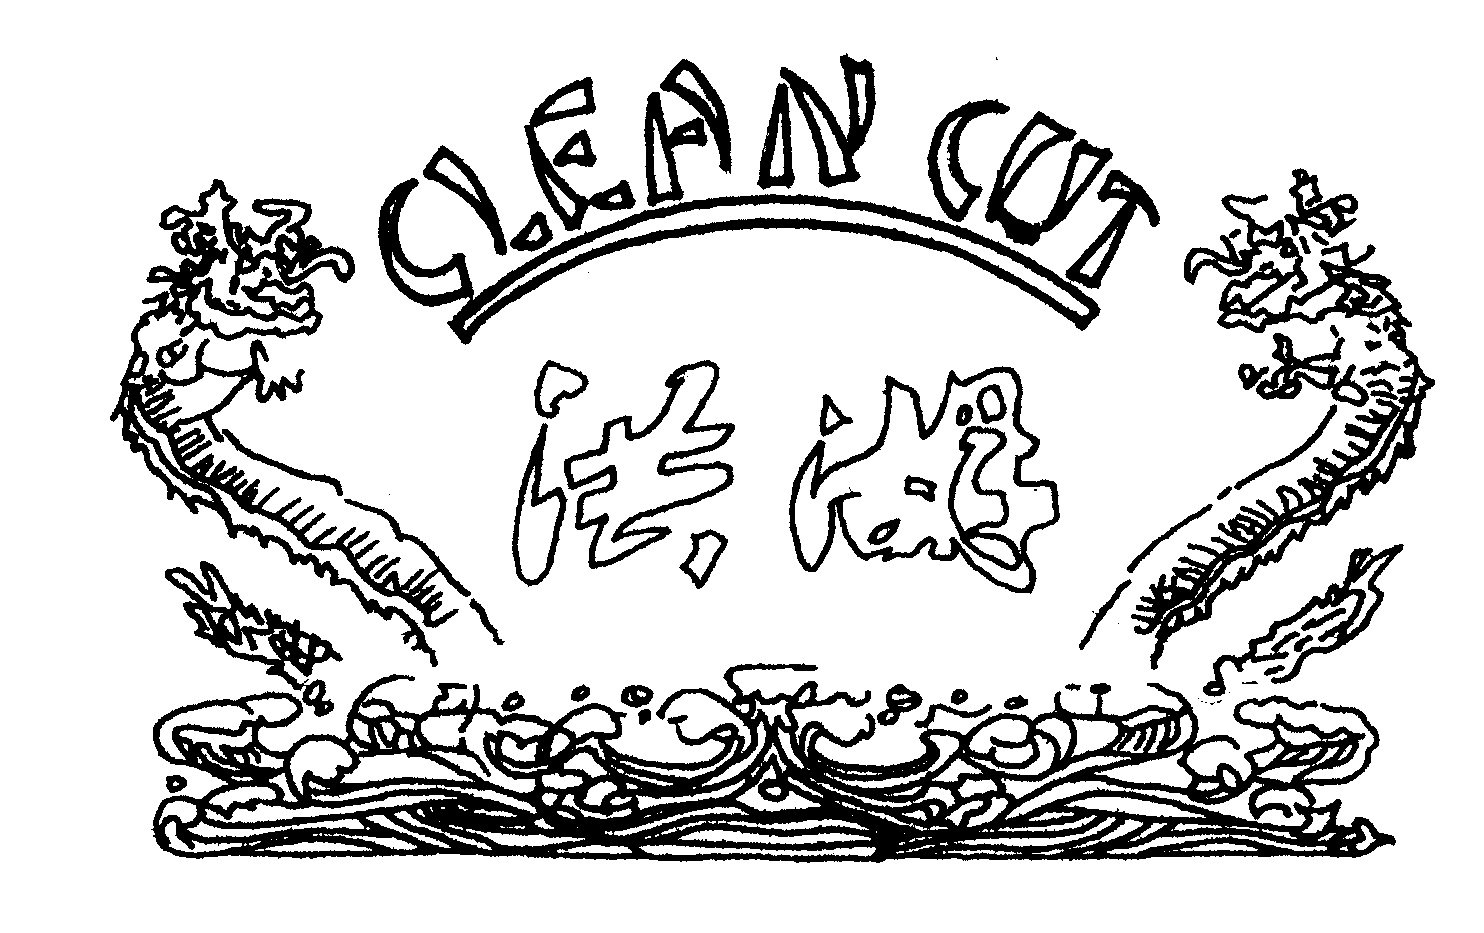 CLEAN CUT